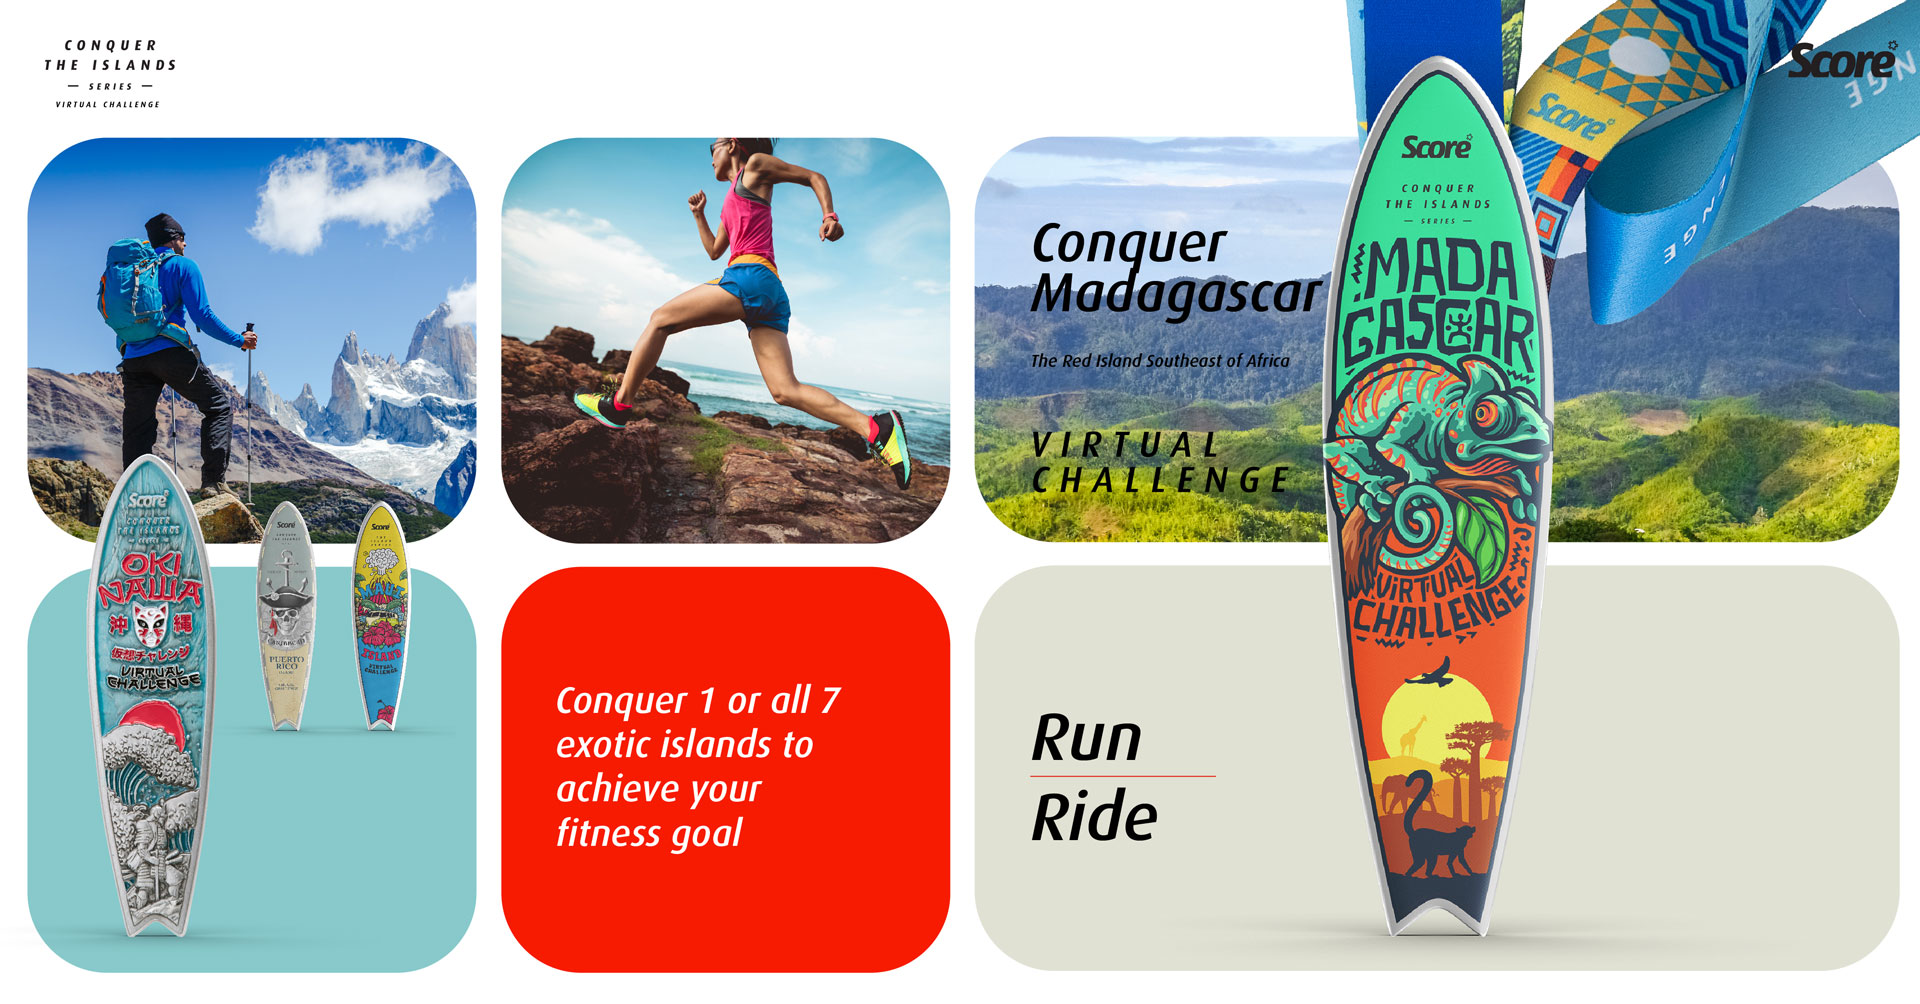 Logo of Conquer Madagascar Virtual Challenge – Run / Ride 2022